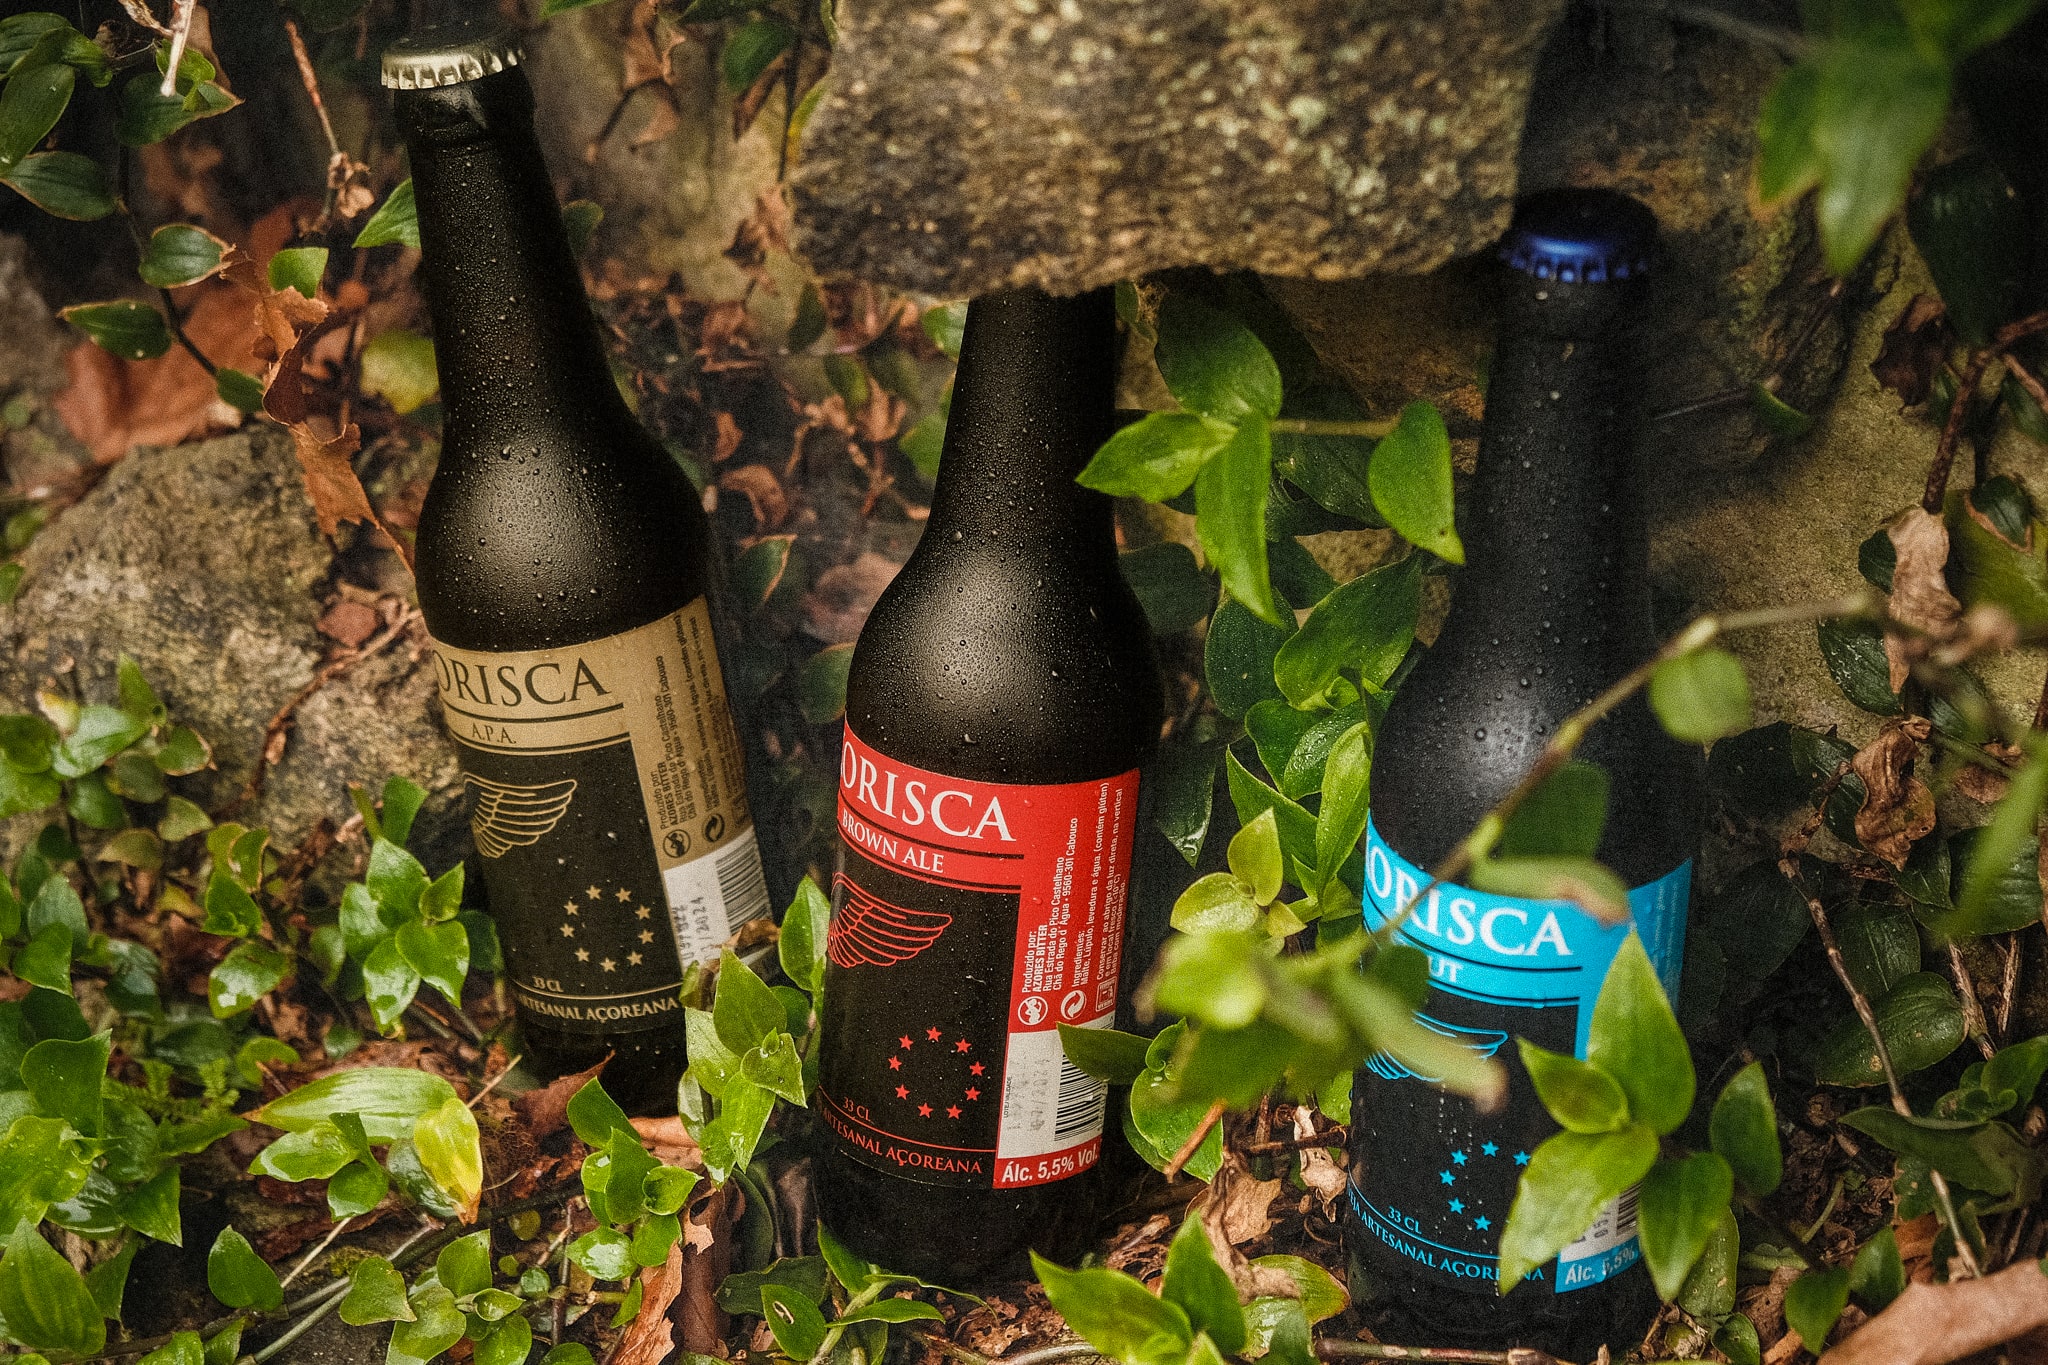 Cerveja artesanal açoriana Korisca Clássica II (APA), Korisca Clássica I (Brown Ale) e Korisca Clássica III (Stout), rodeada de plantas verdes e pedra clara, ilha de São Miguel, Açores.